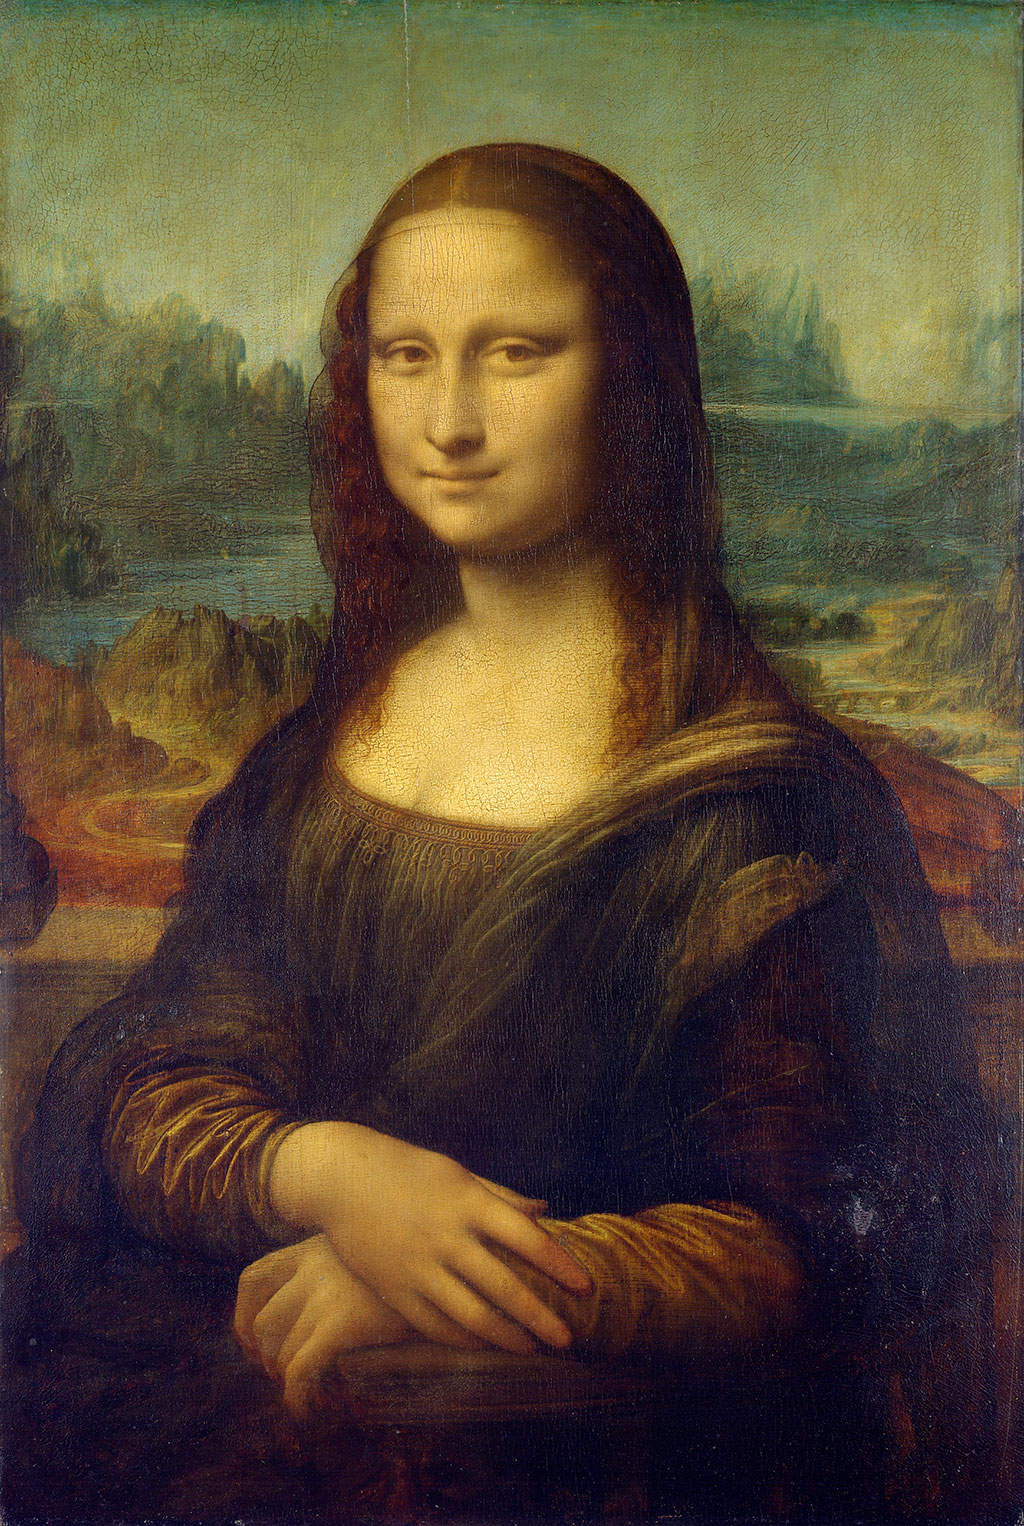 A Mona Lisa, história e mistérios - Museu do Louvre Paris - PARISCityVISION